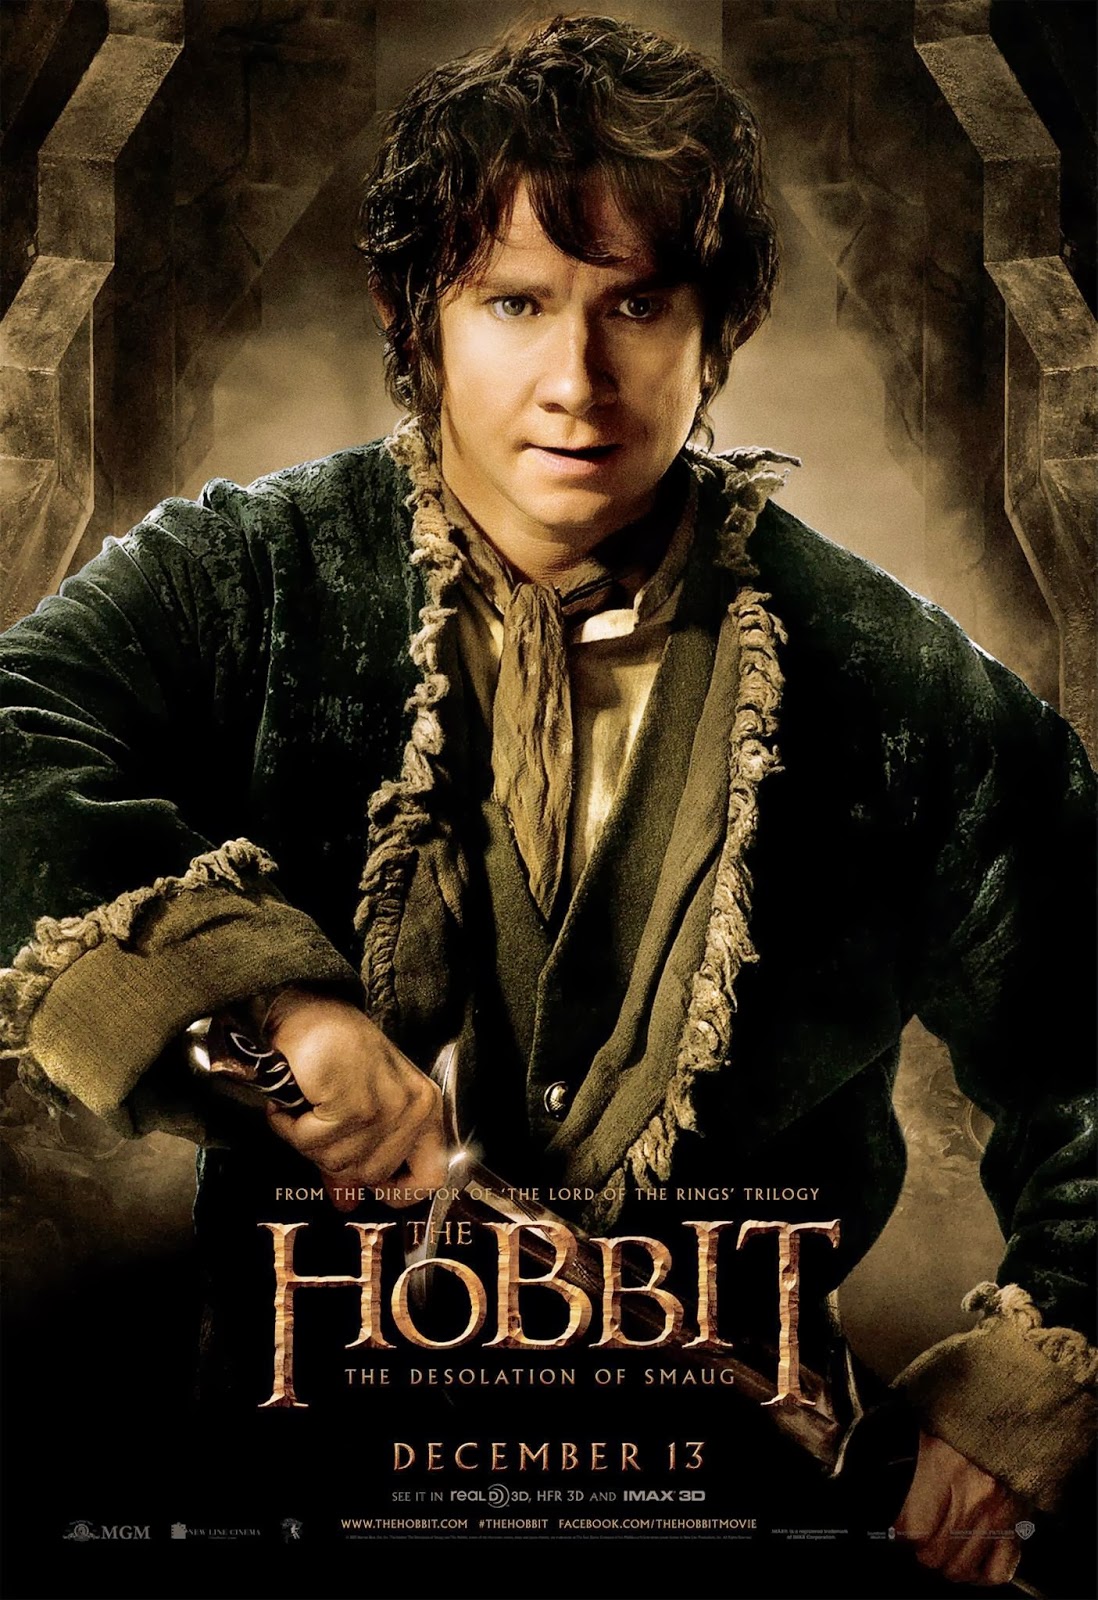 ｃｉａ こちら映画中央情報局です The Hobbit 大ヒット シリーズの第2章 ザ ホビット ザ デソレイション オブ スマウグ が キャラクター ポスターを7枚まとめてリリース